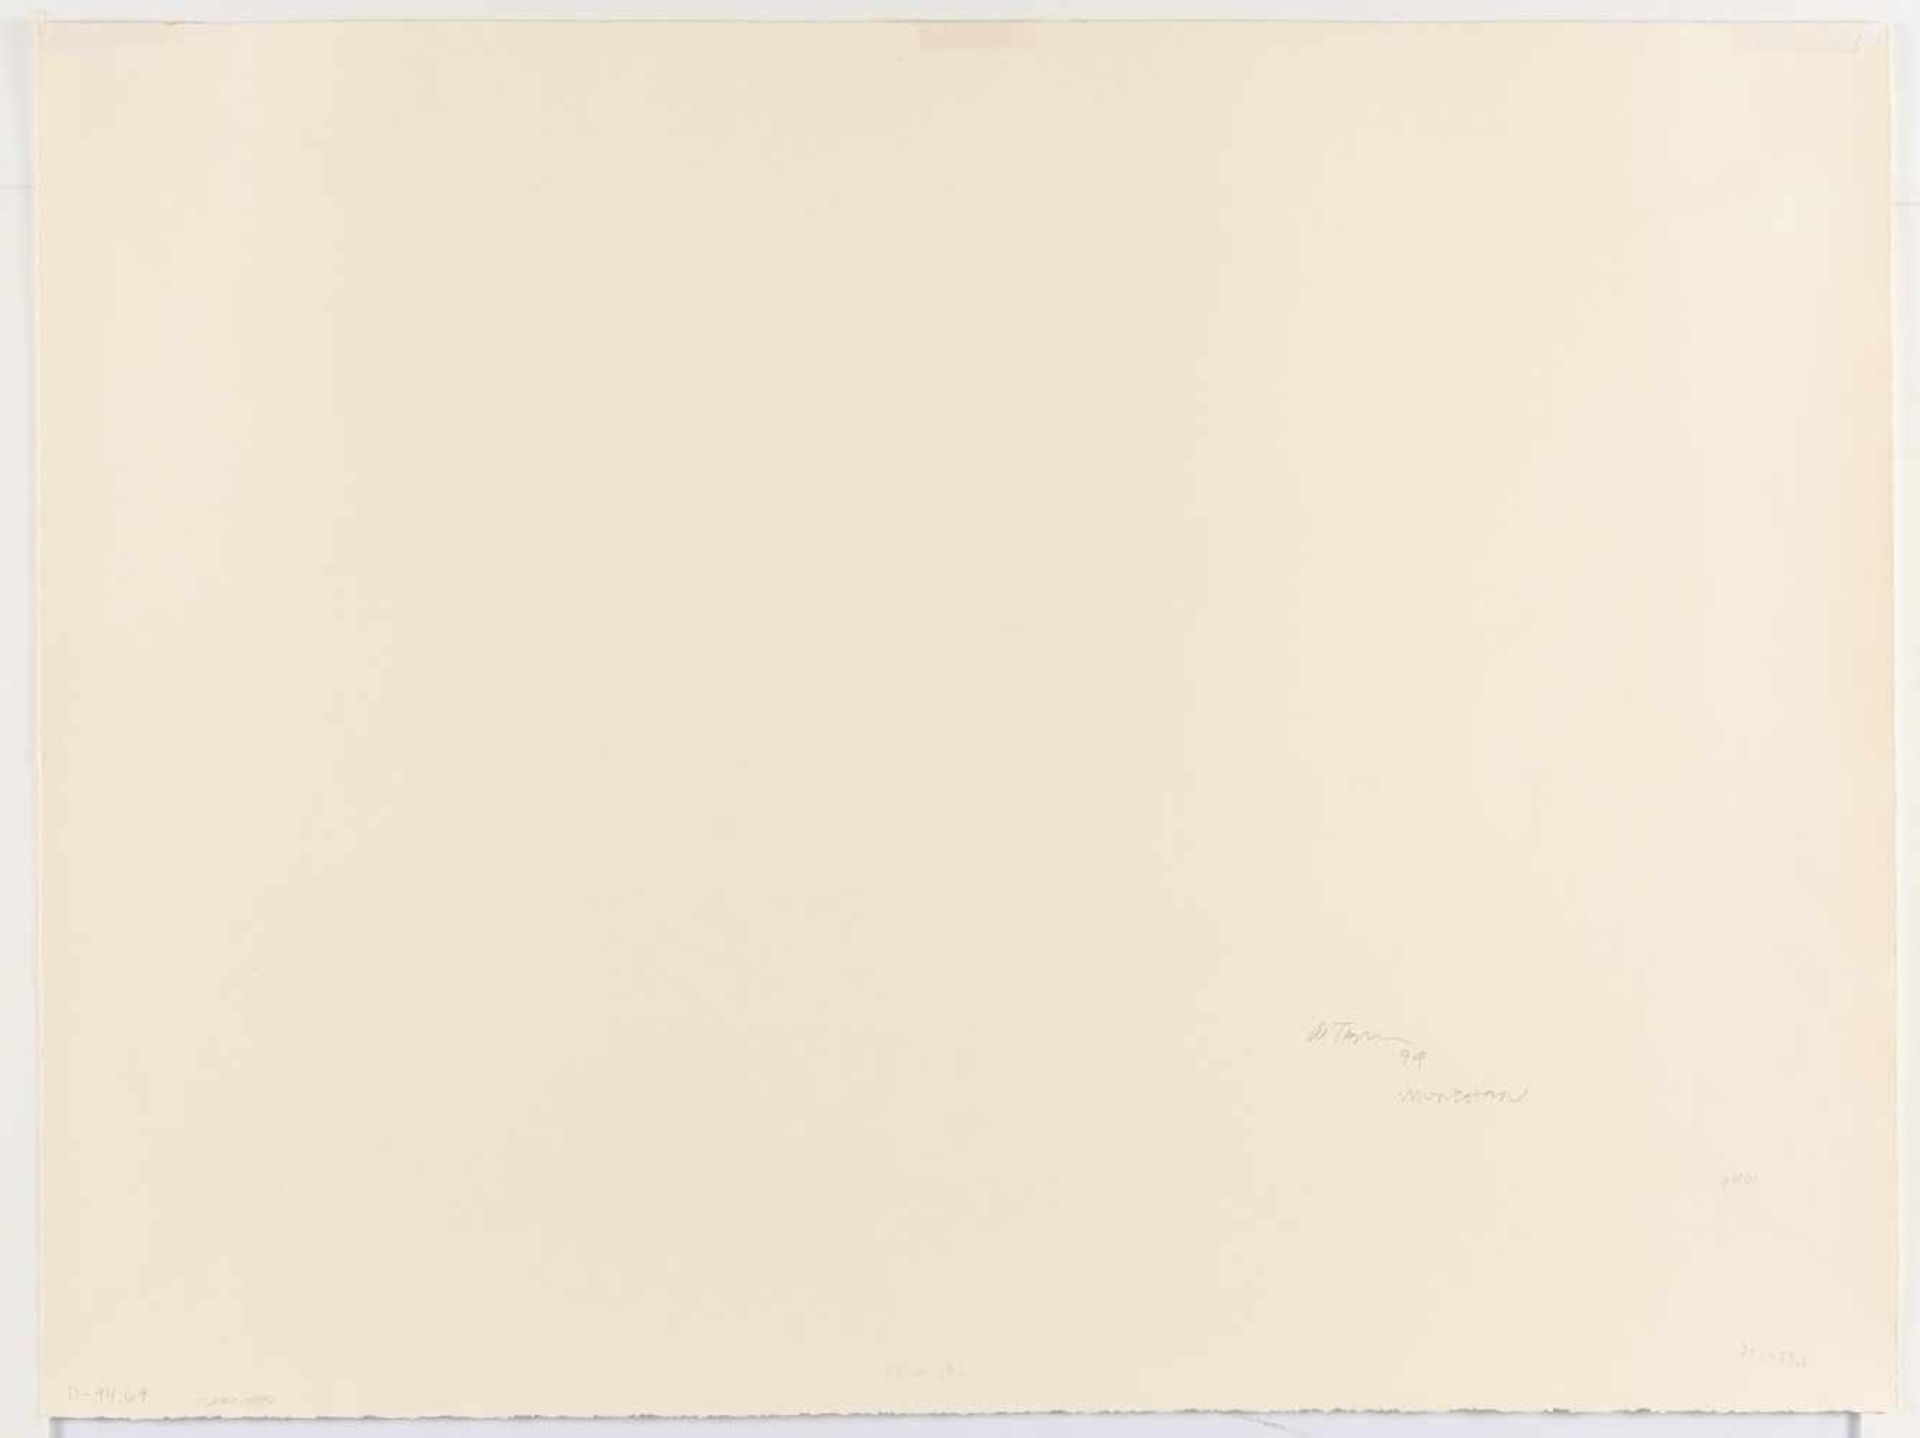 Al TaylorUntitledBleistift und Deckweiß auf cremefarbenem Velin. (19)94. Ca. 53,5 x 71,5 cm - Bild 3 aus 3